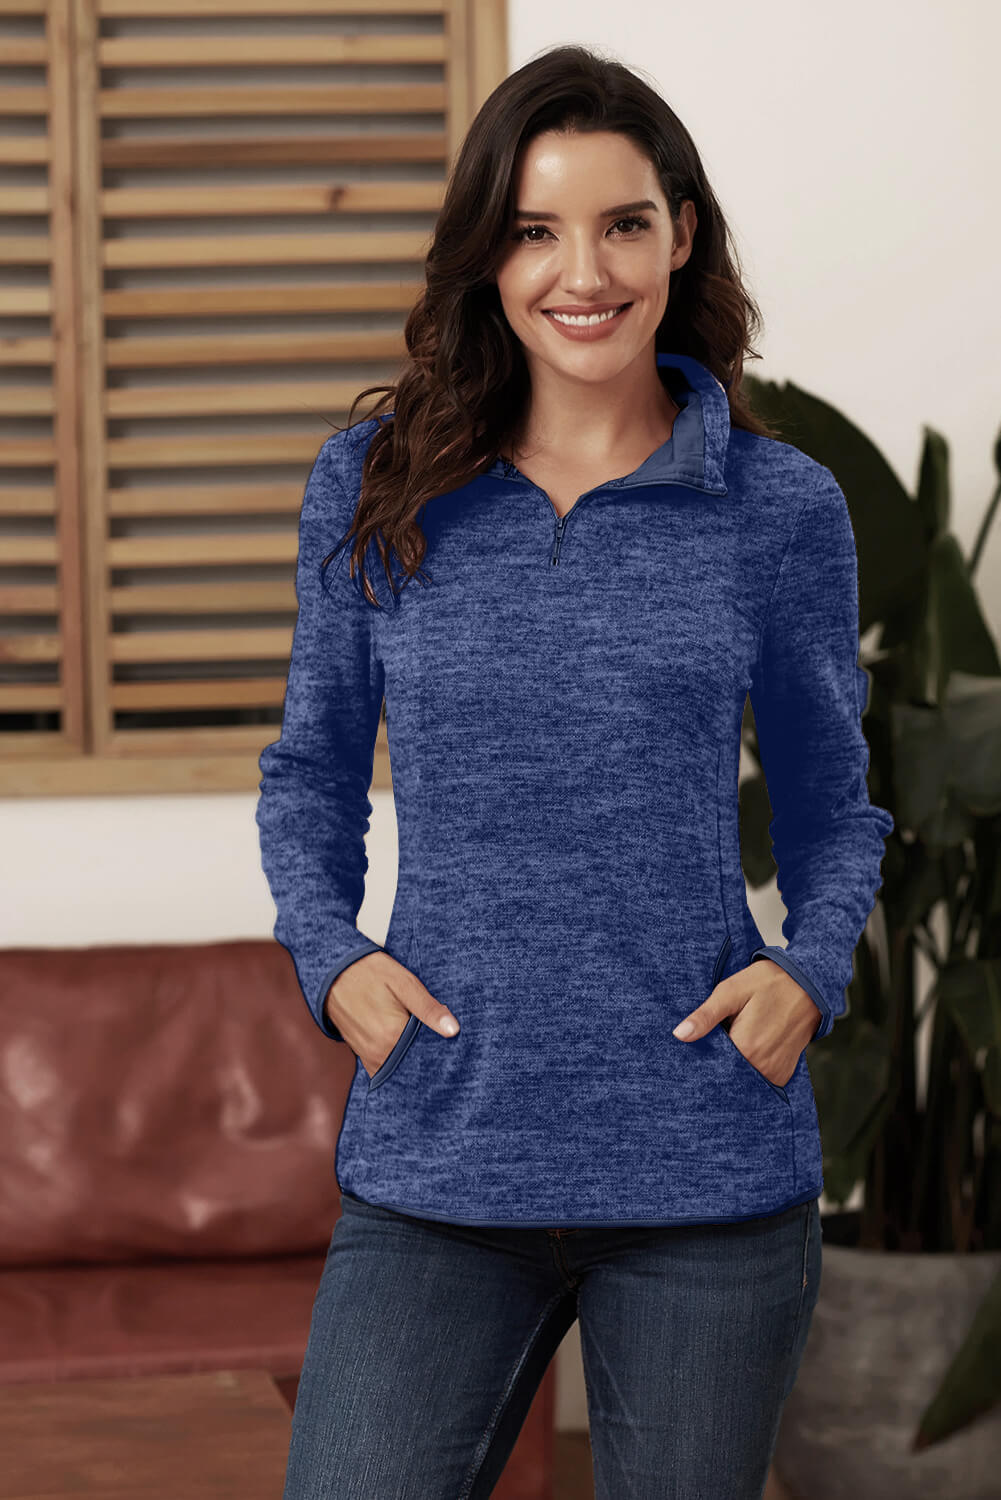 Azura Exchange Blue Quarter Zip Pullover Sweatshirt